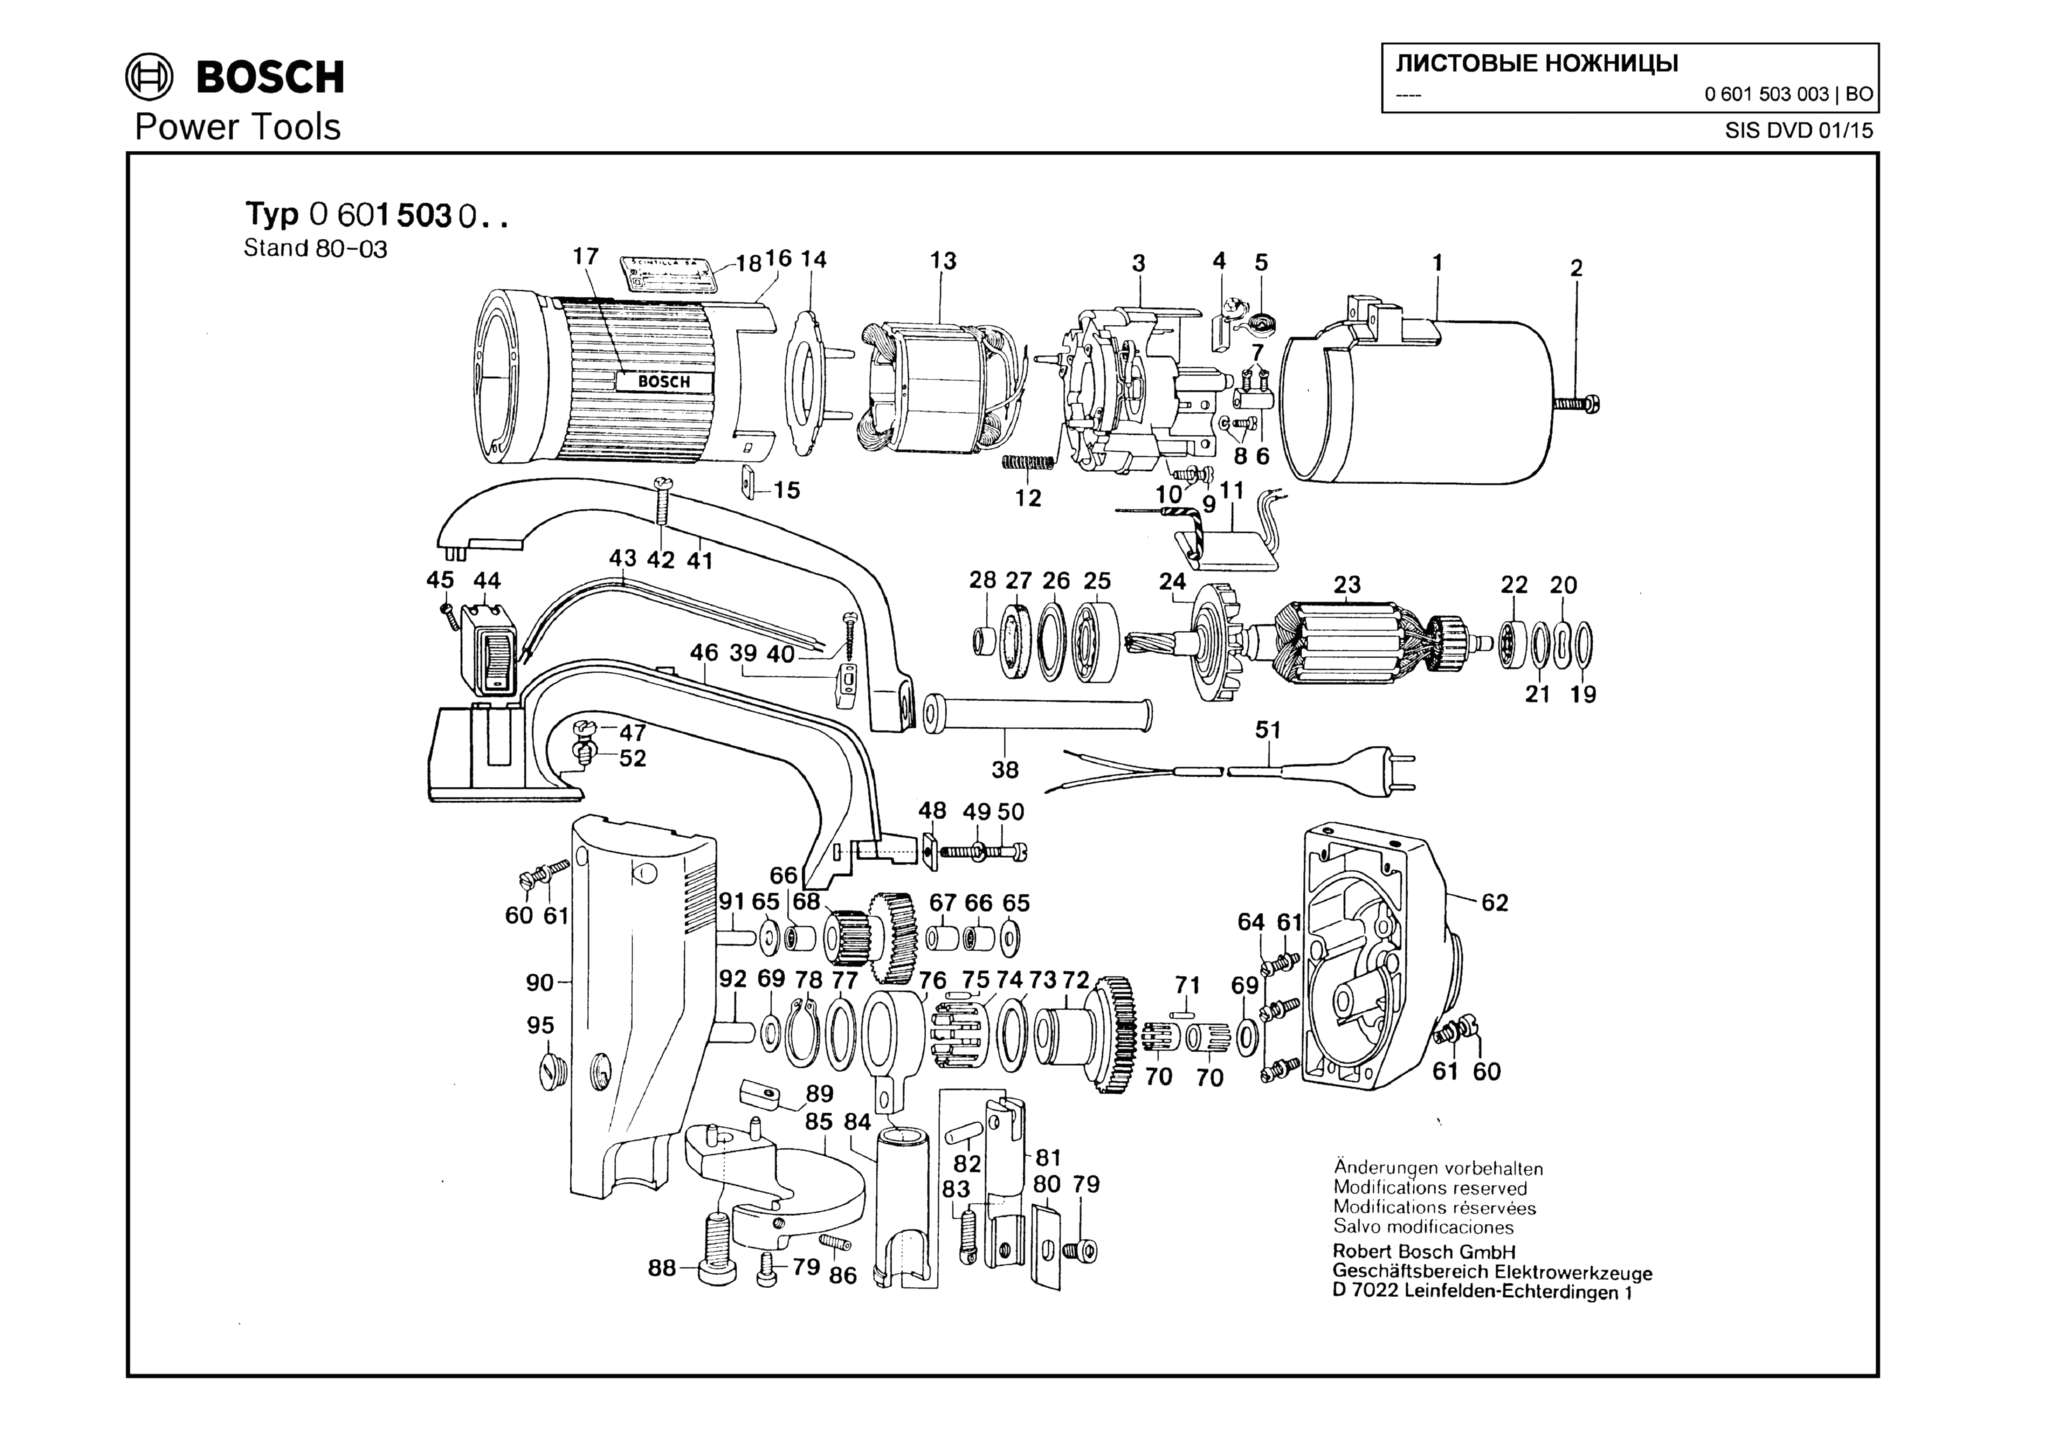 Запчасти, схема и деталировка Bosch (ТИП 0601503003)